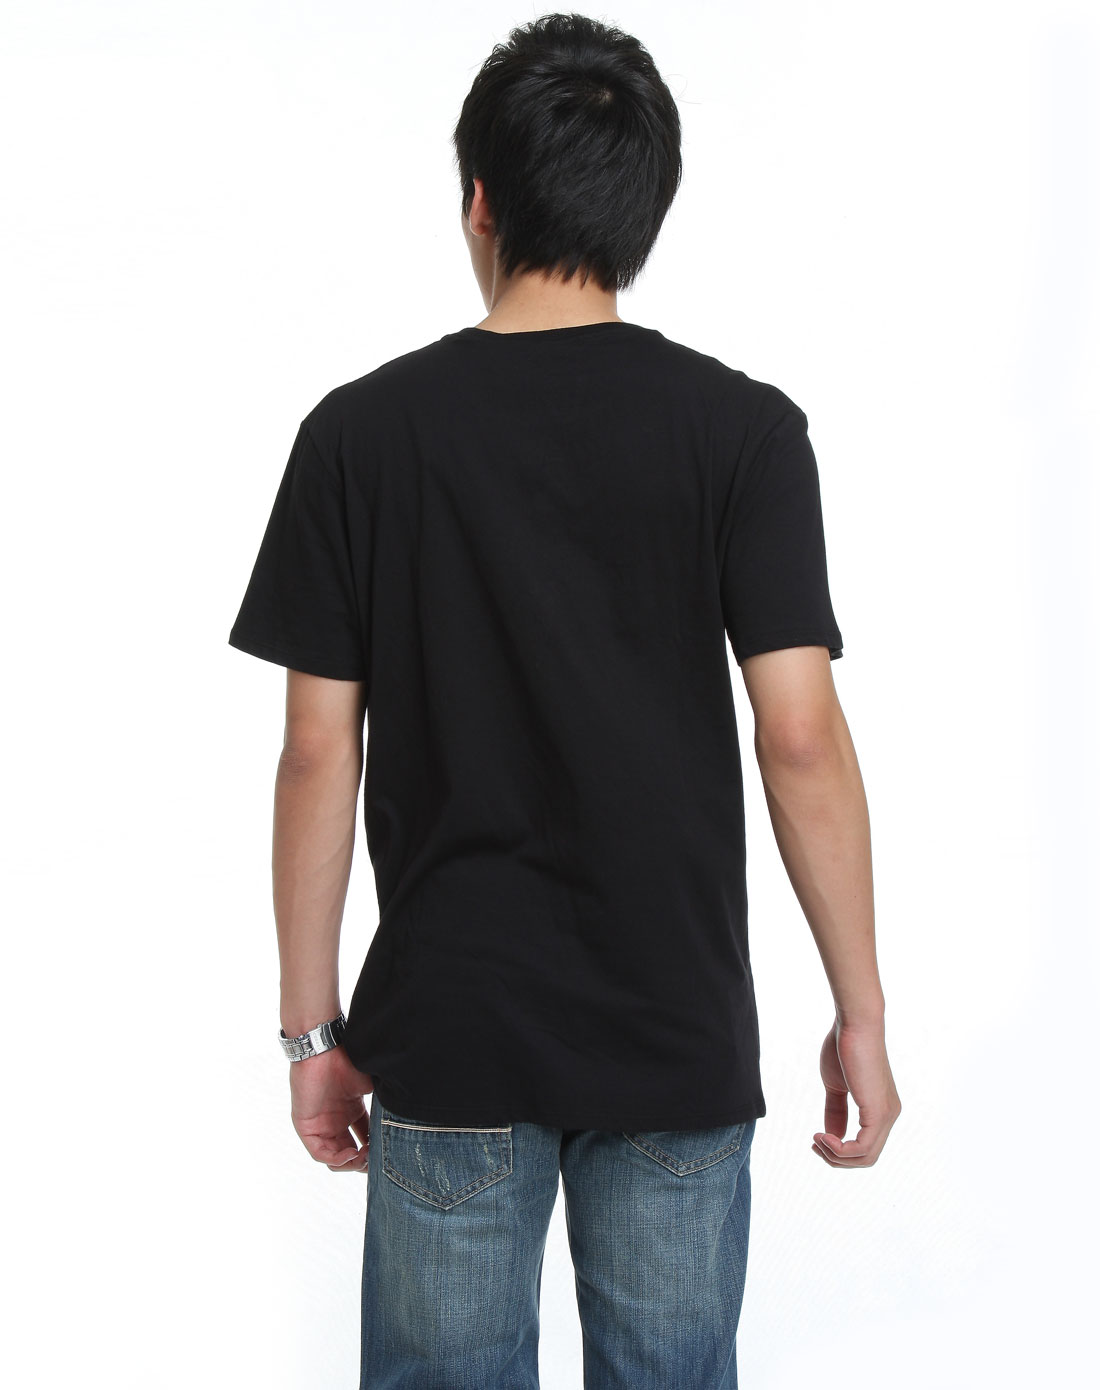 fox-男装专场男款纯黑色短袖t恤2